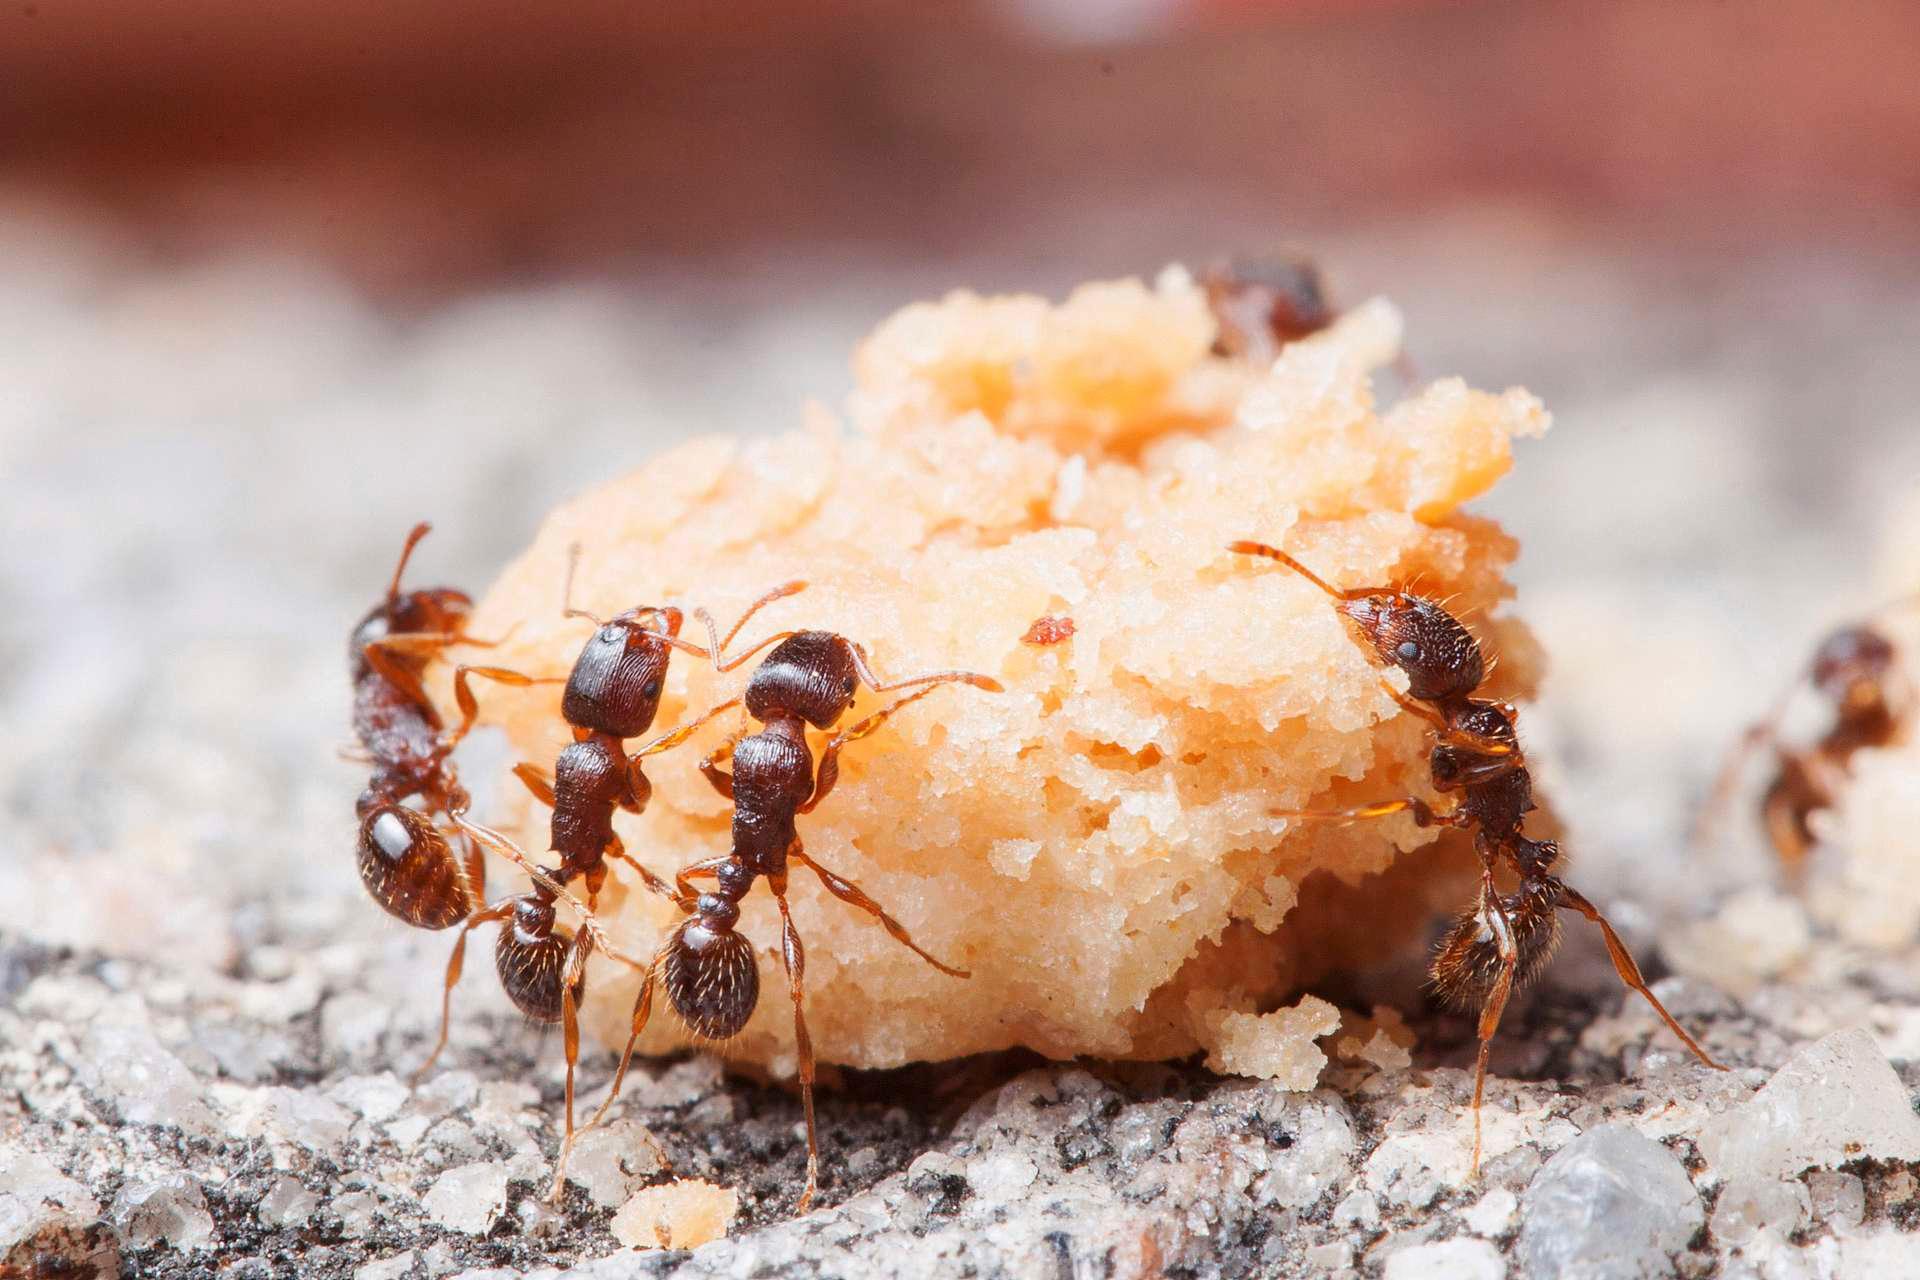 Det krever samarbeid hvis mauren skal gomle i seg matrestene vi lar ligge på fortau rundt om i verden.